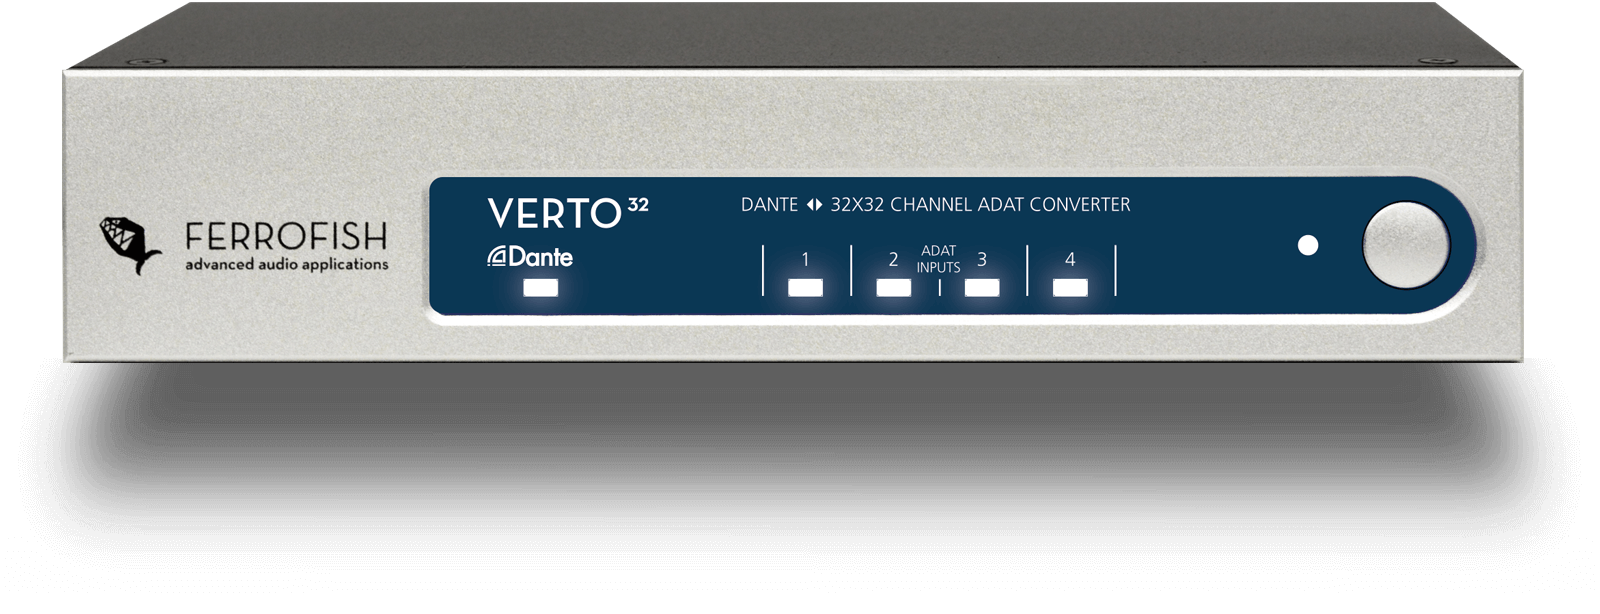 Ferrofish Verto 32 - 32 channel ADAT - Dante Format Converter